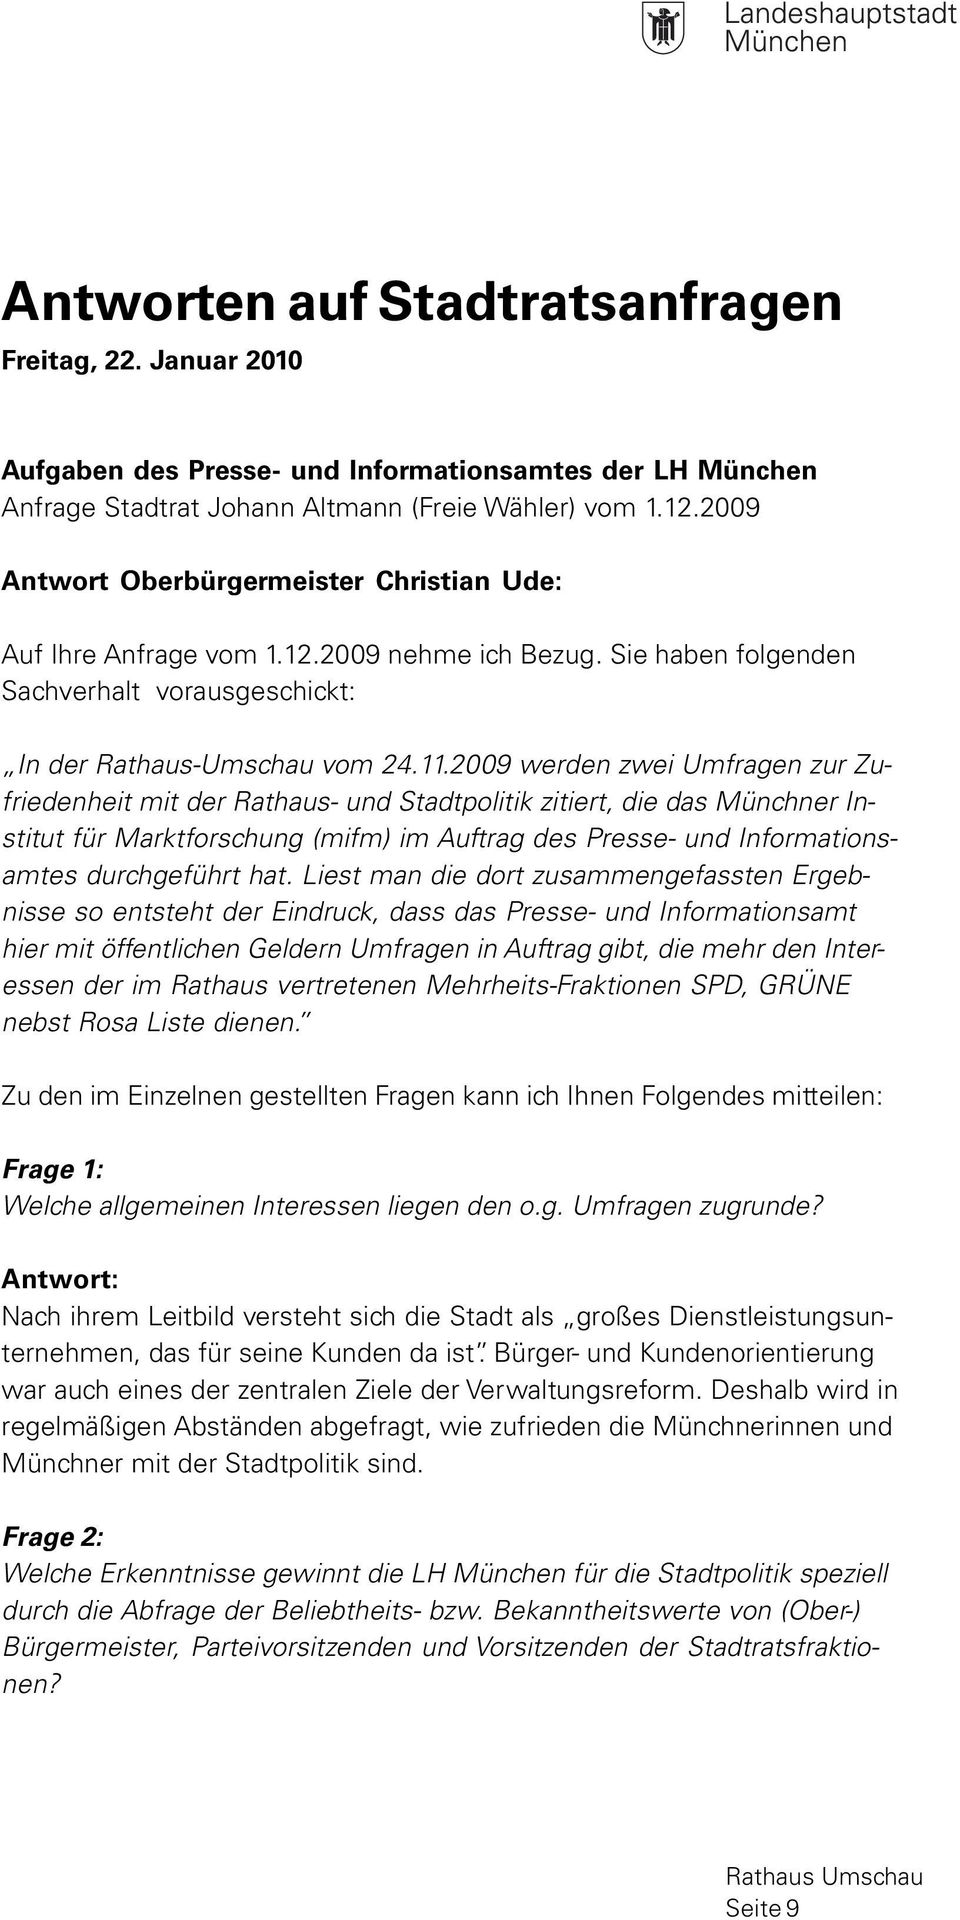 2009 werden zwei Umfragen zur Zufriedenheit mit der Rathaus- und Stadtpolitik zitiert, die das Münchner Institut für Marktforschung (mifm) im Auftrag des Presse- und Informationsamtes durchgeführt